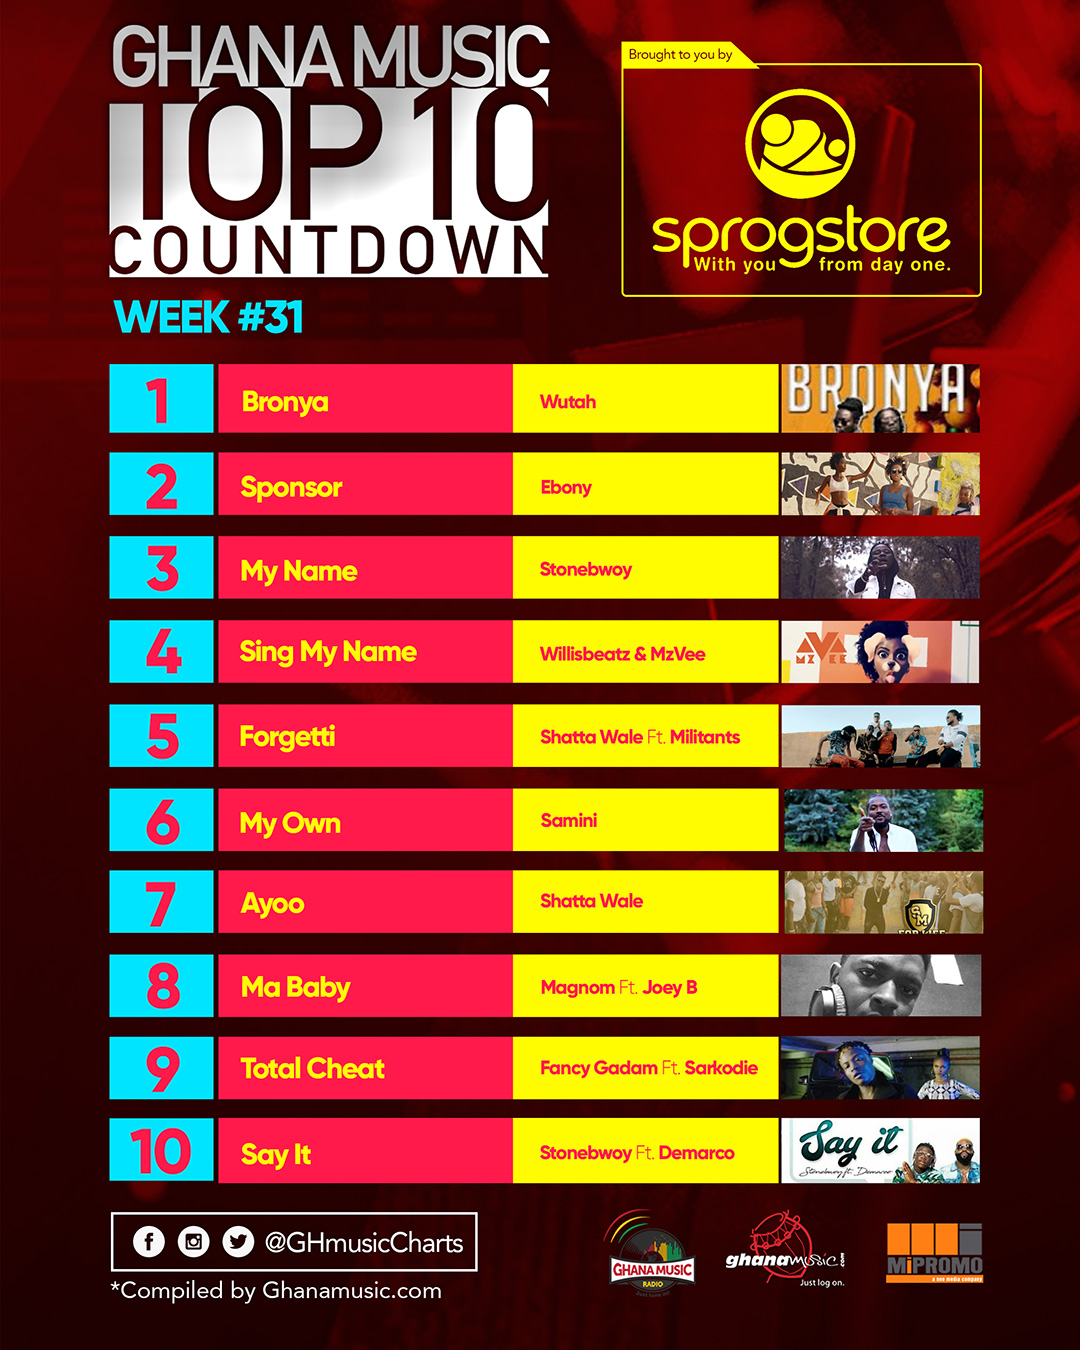 Week #31: Week ending Saturday, August 5th, 2017. Ghana Music Top 10 Countdown.